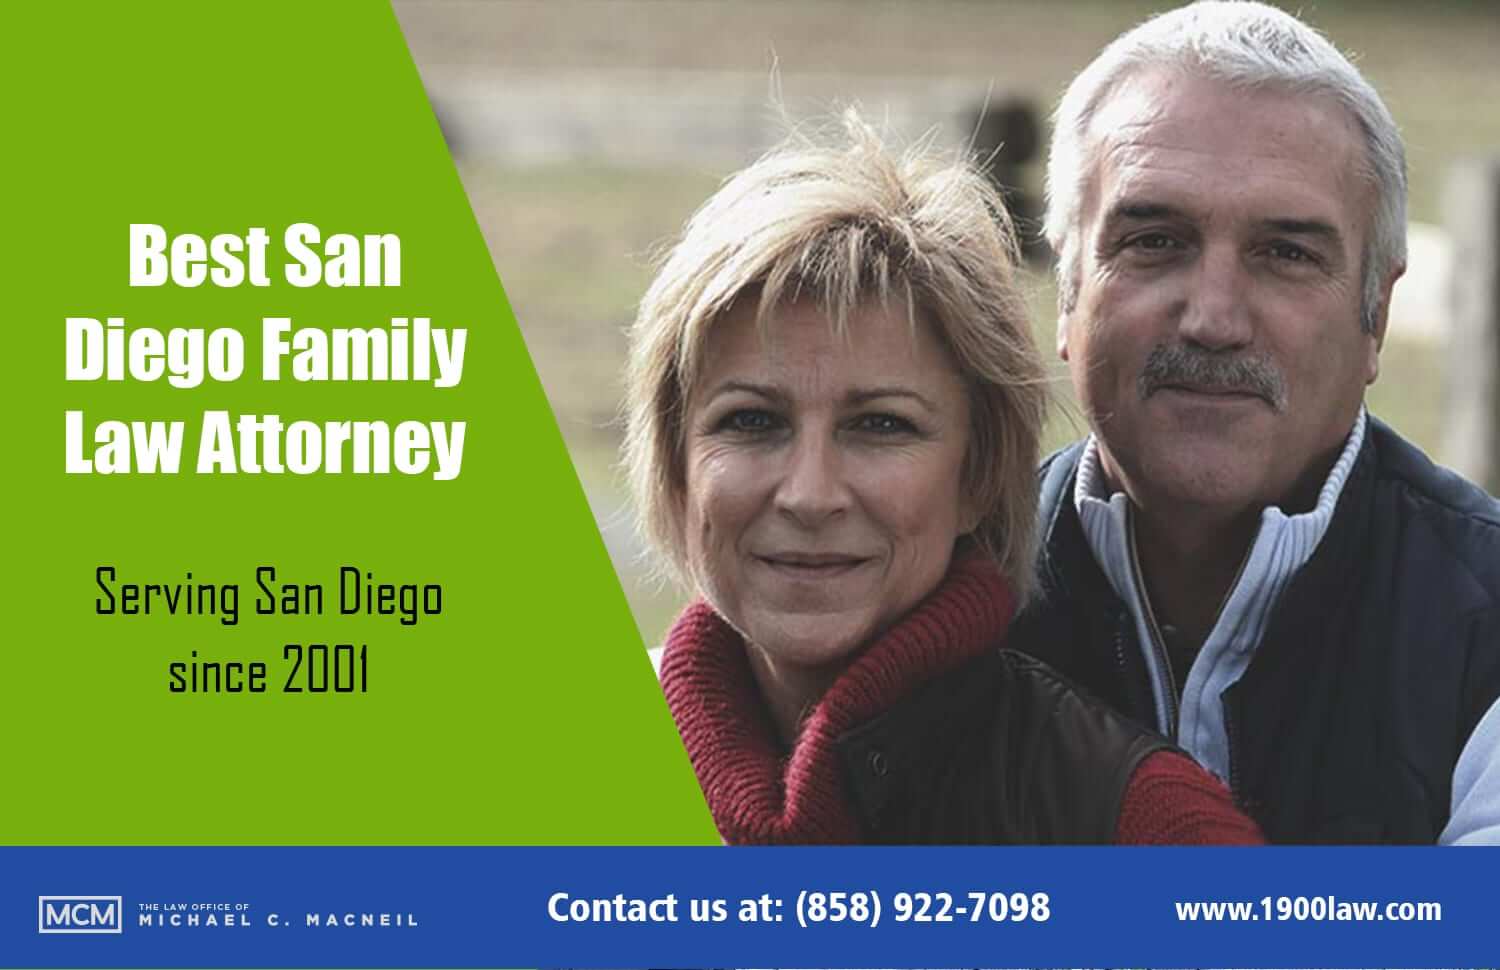 San Diego Divorce Lawyer